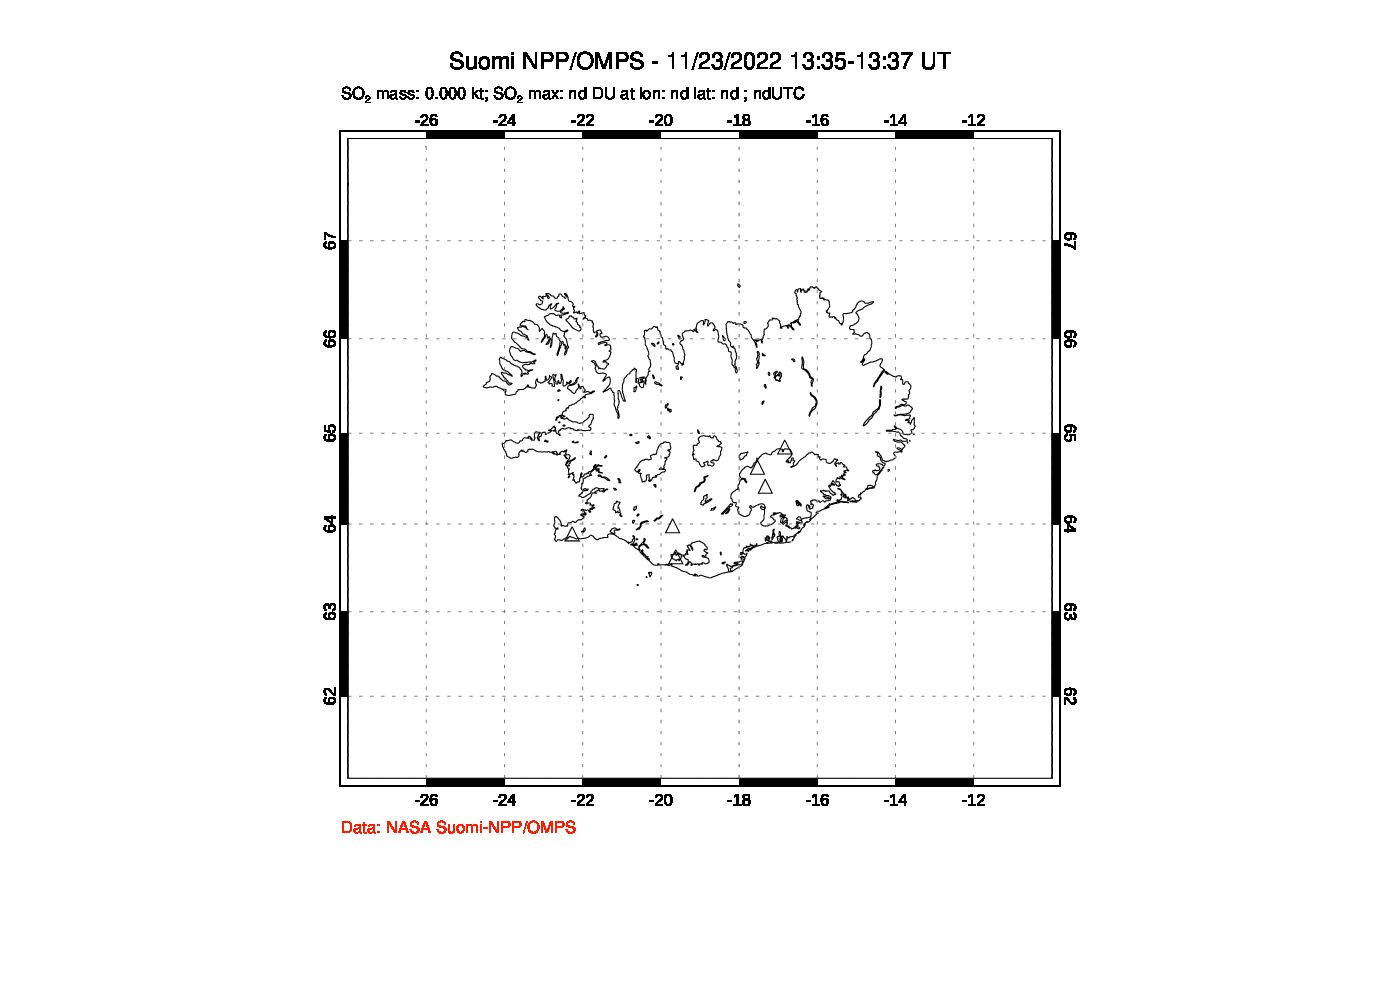 A sulfur dioxide image over Iceland on Nov 23, 2022.